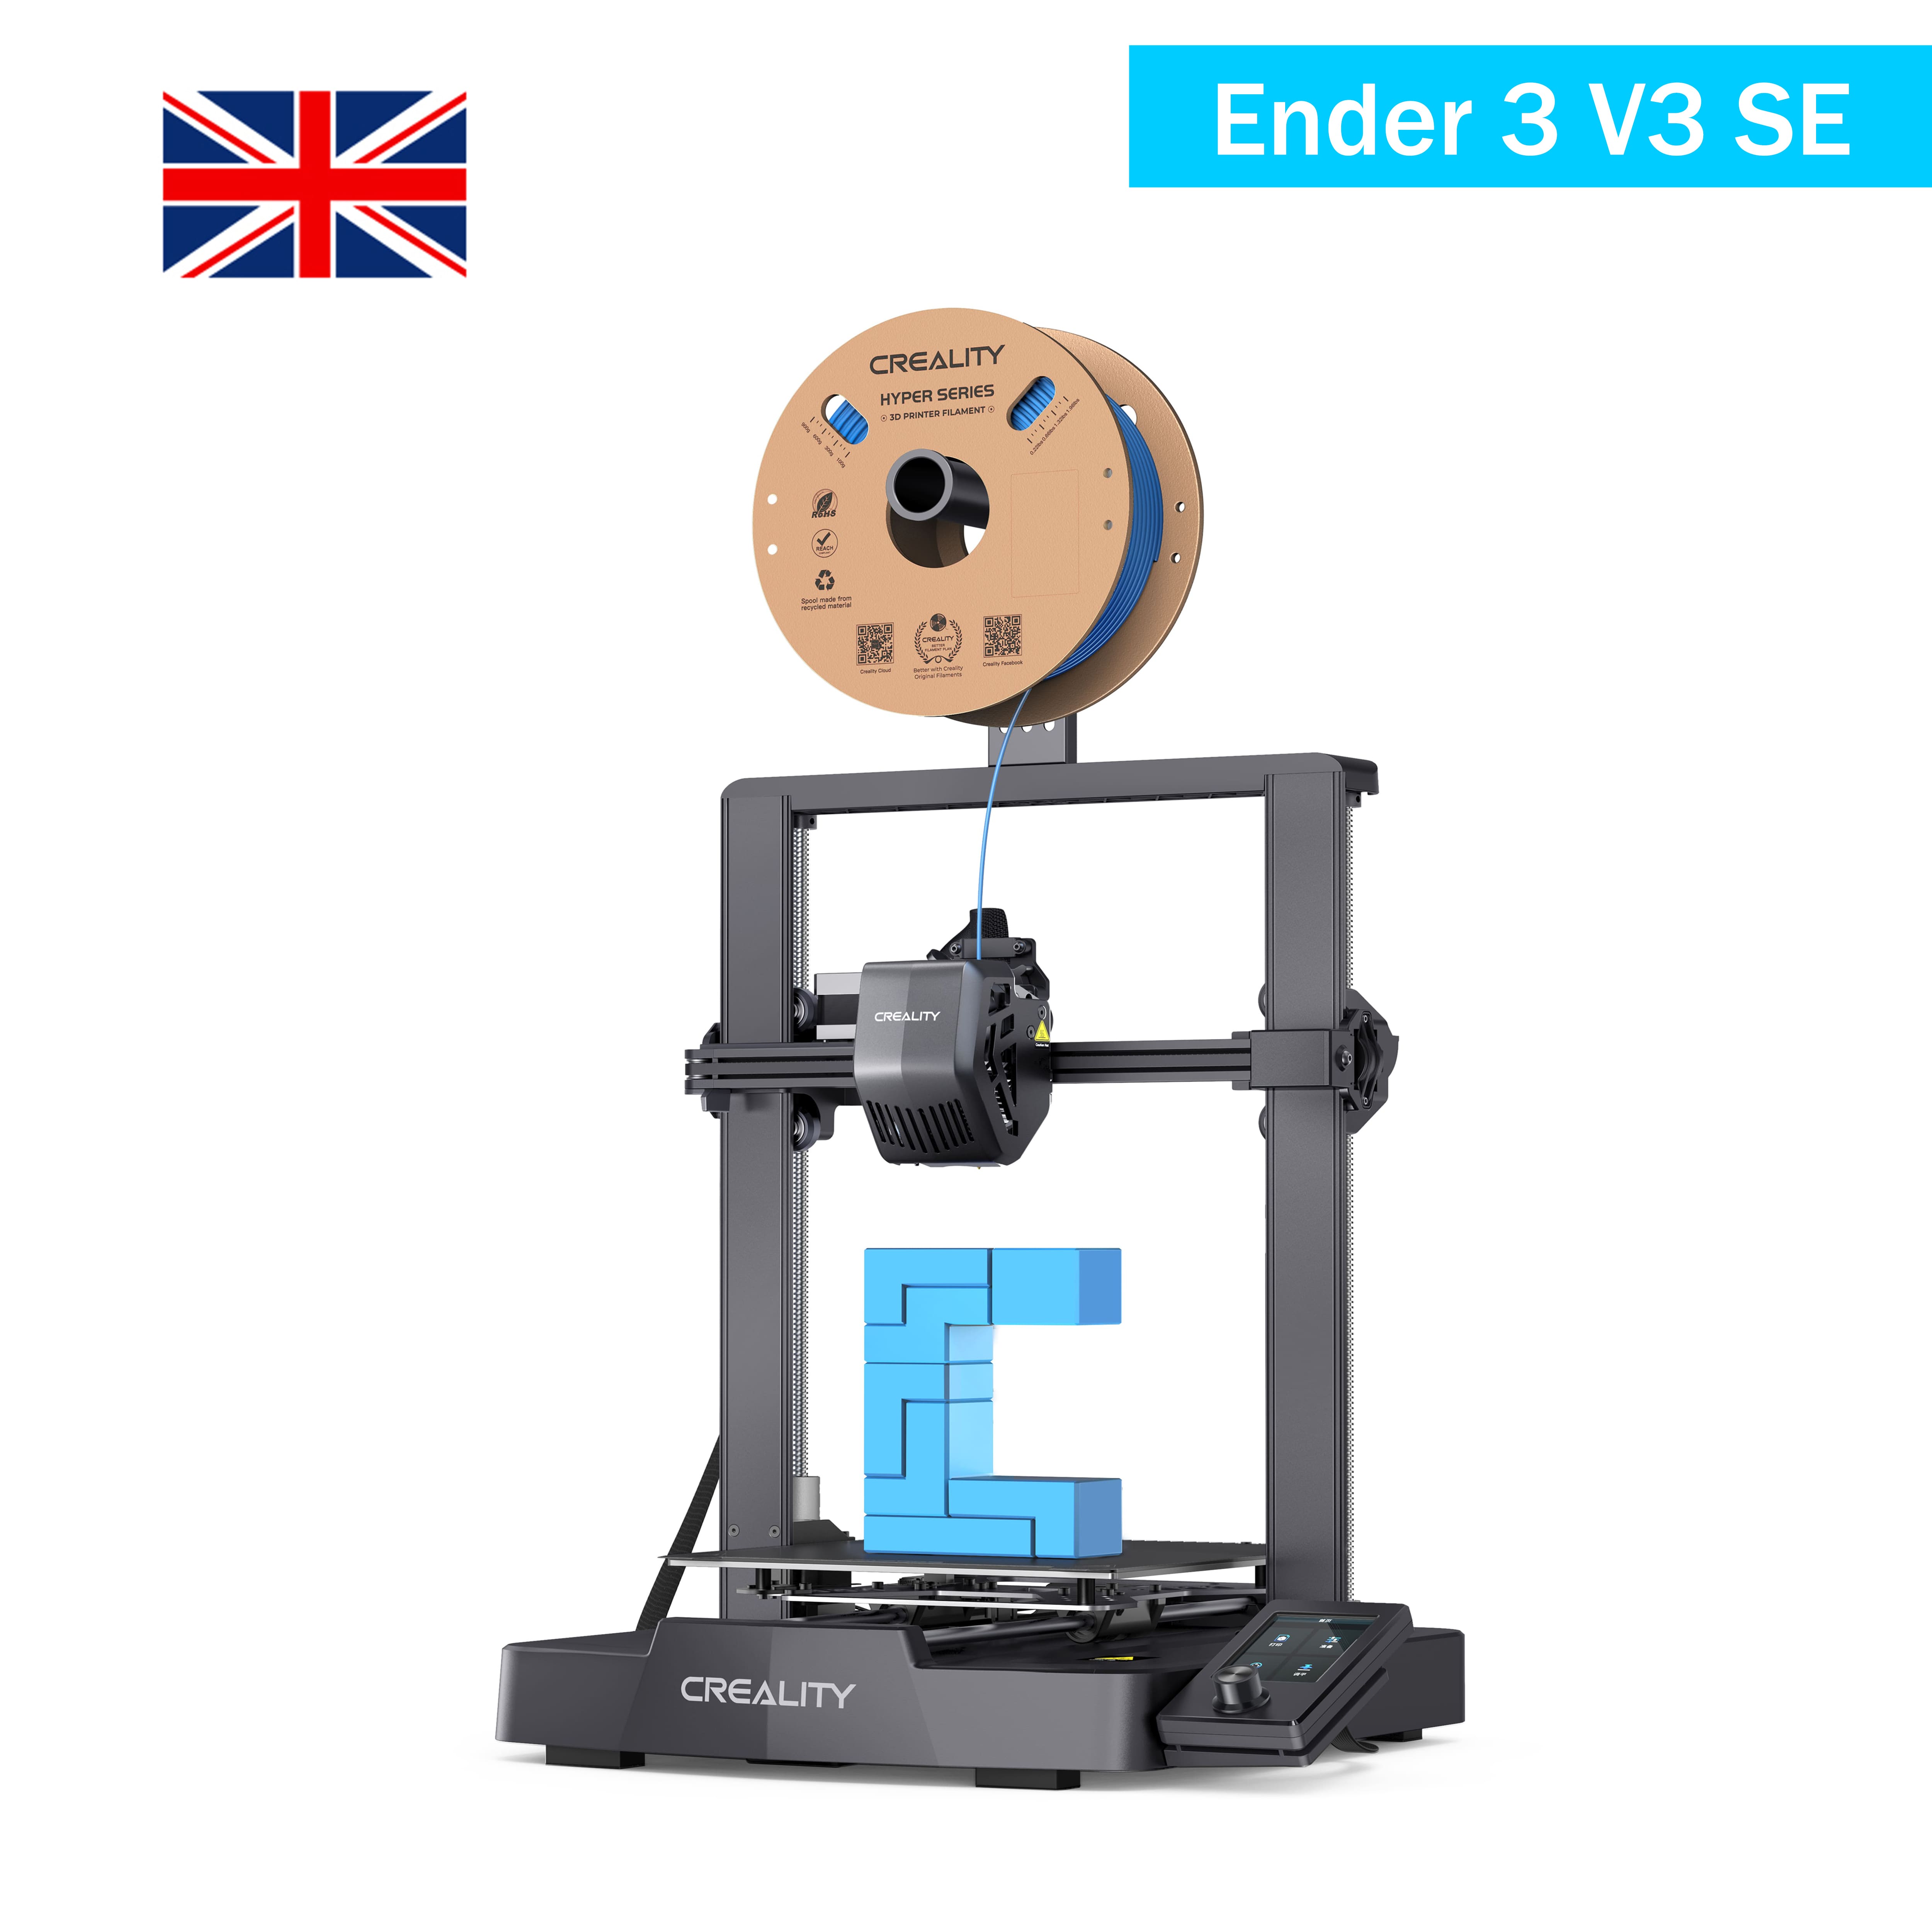 Creality-uk-official-3d-printer-store-ender-3-v3-se-3dprinter-for-sale.jpg